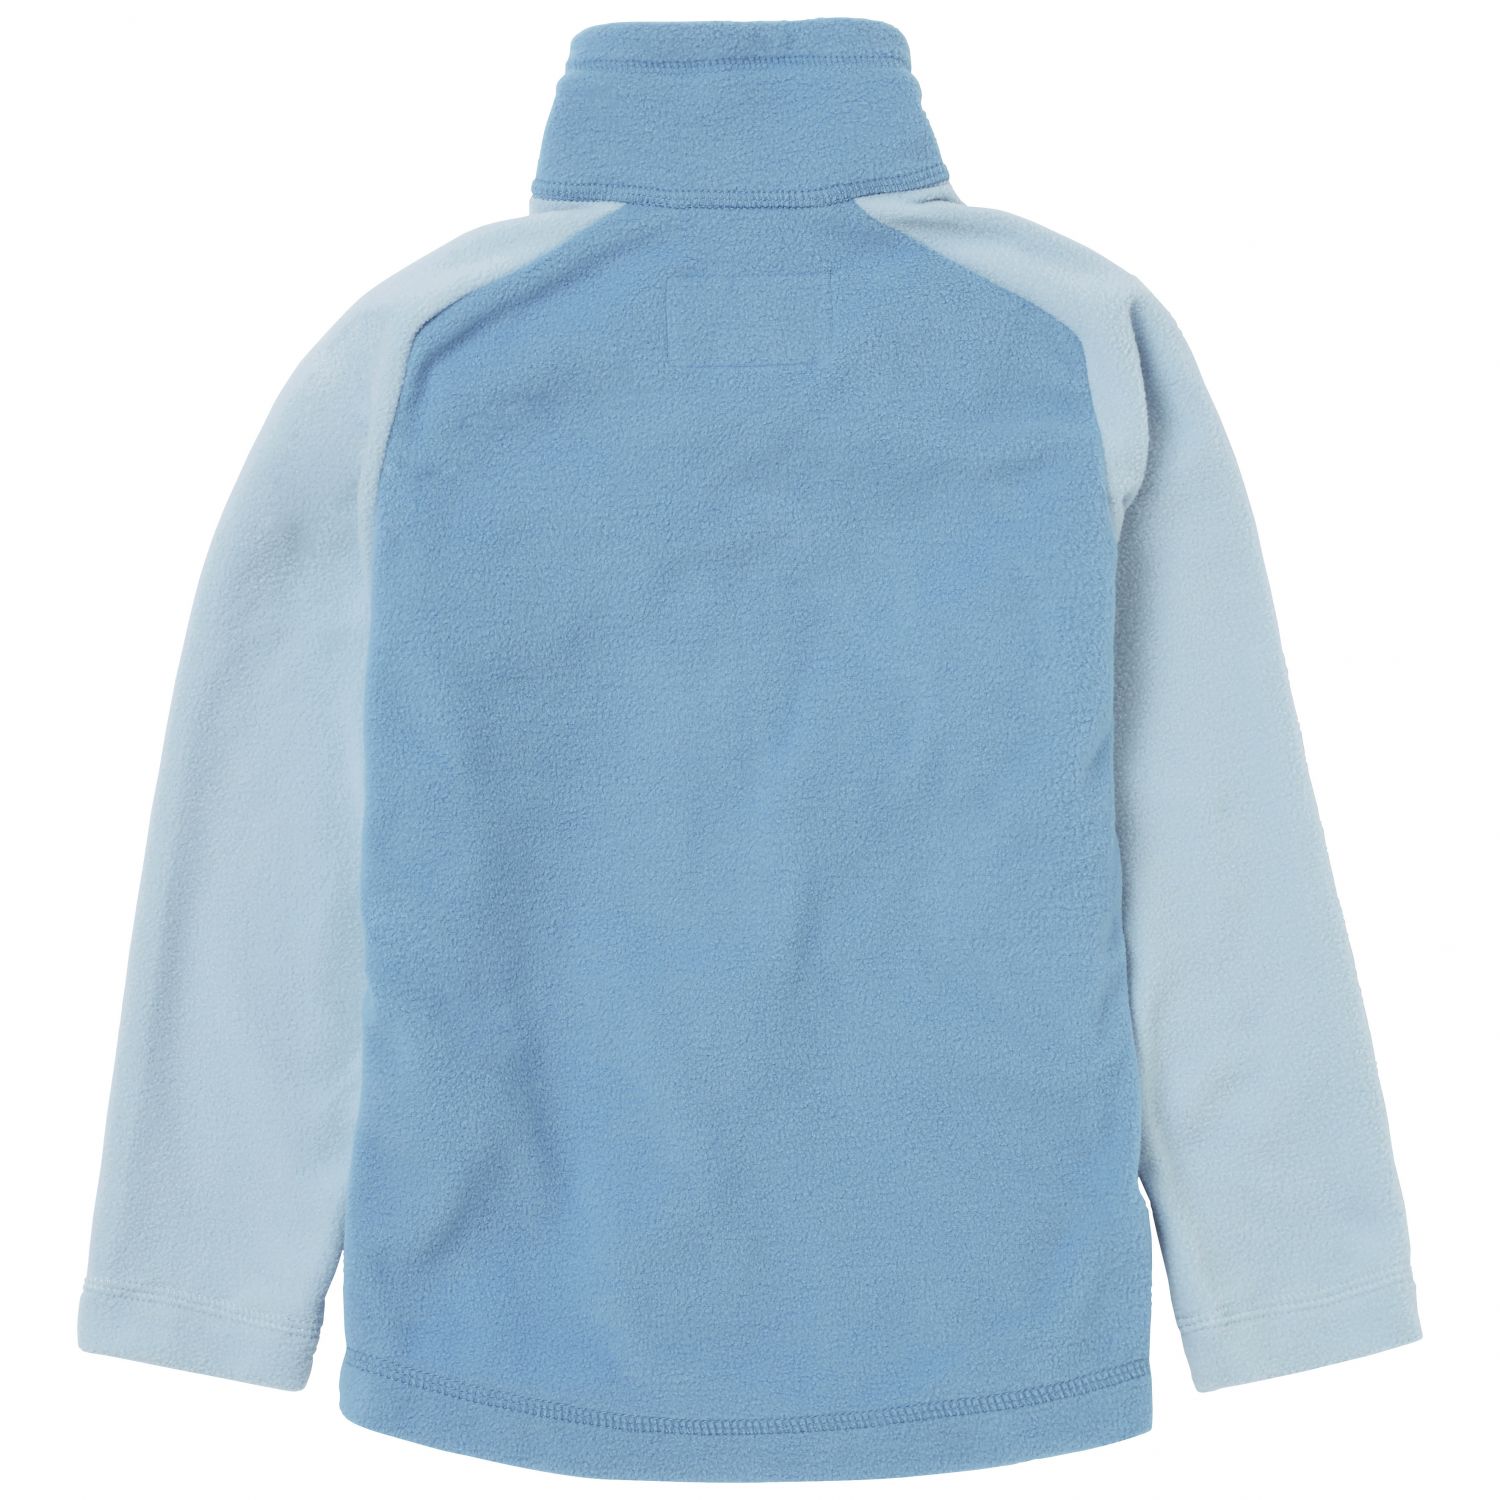 Helly Hansen Daybreaker 2.0 fleece jacket, kids, blue fog